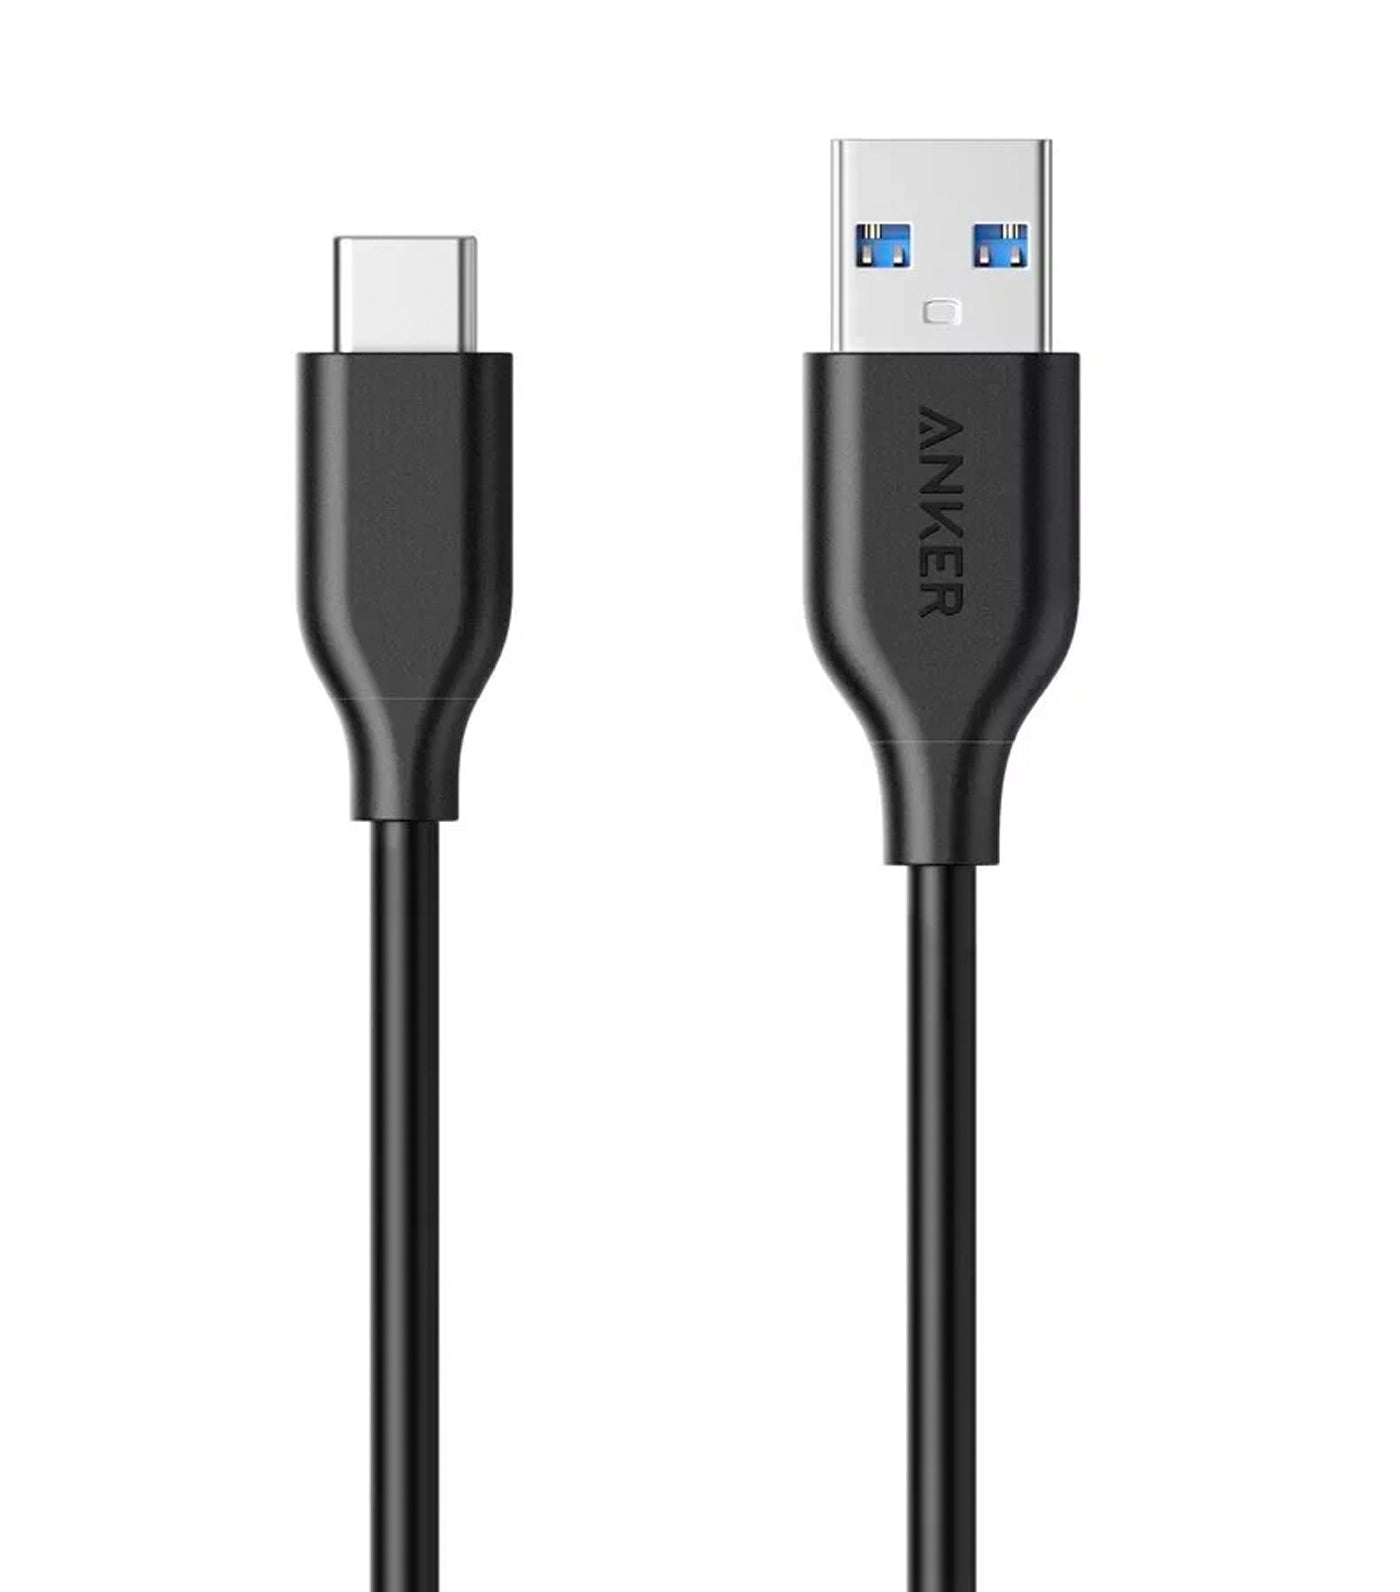 Anker PowerLine USB-C to USB 3.0 3ft Black